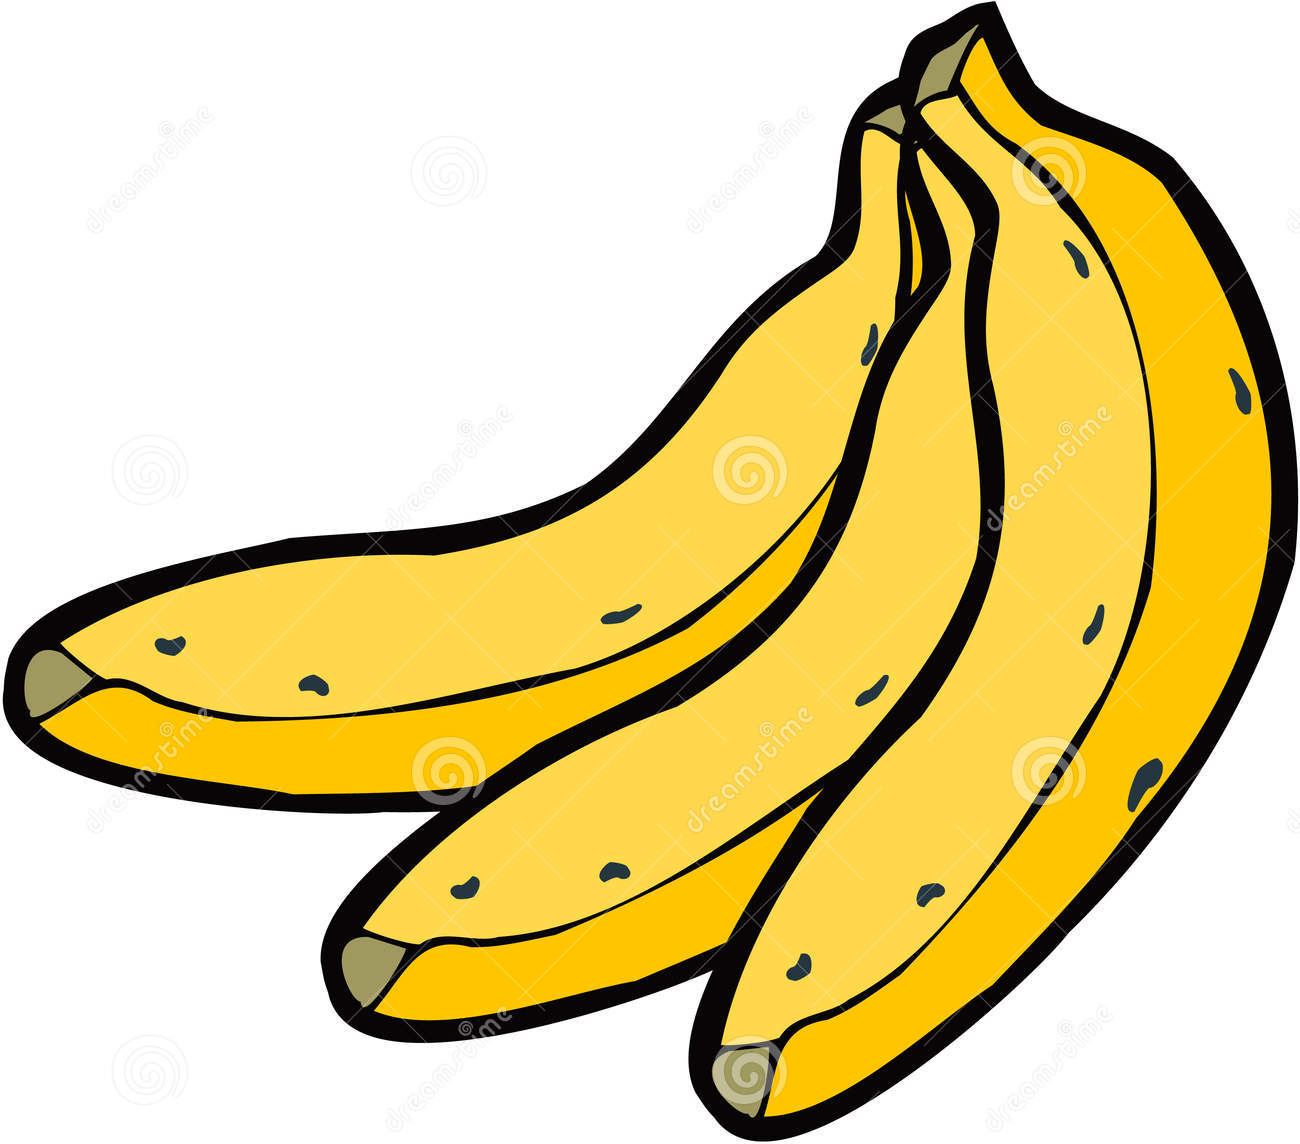 clipart of banana - photo #26